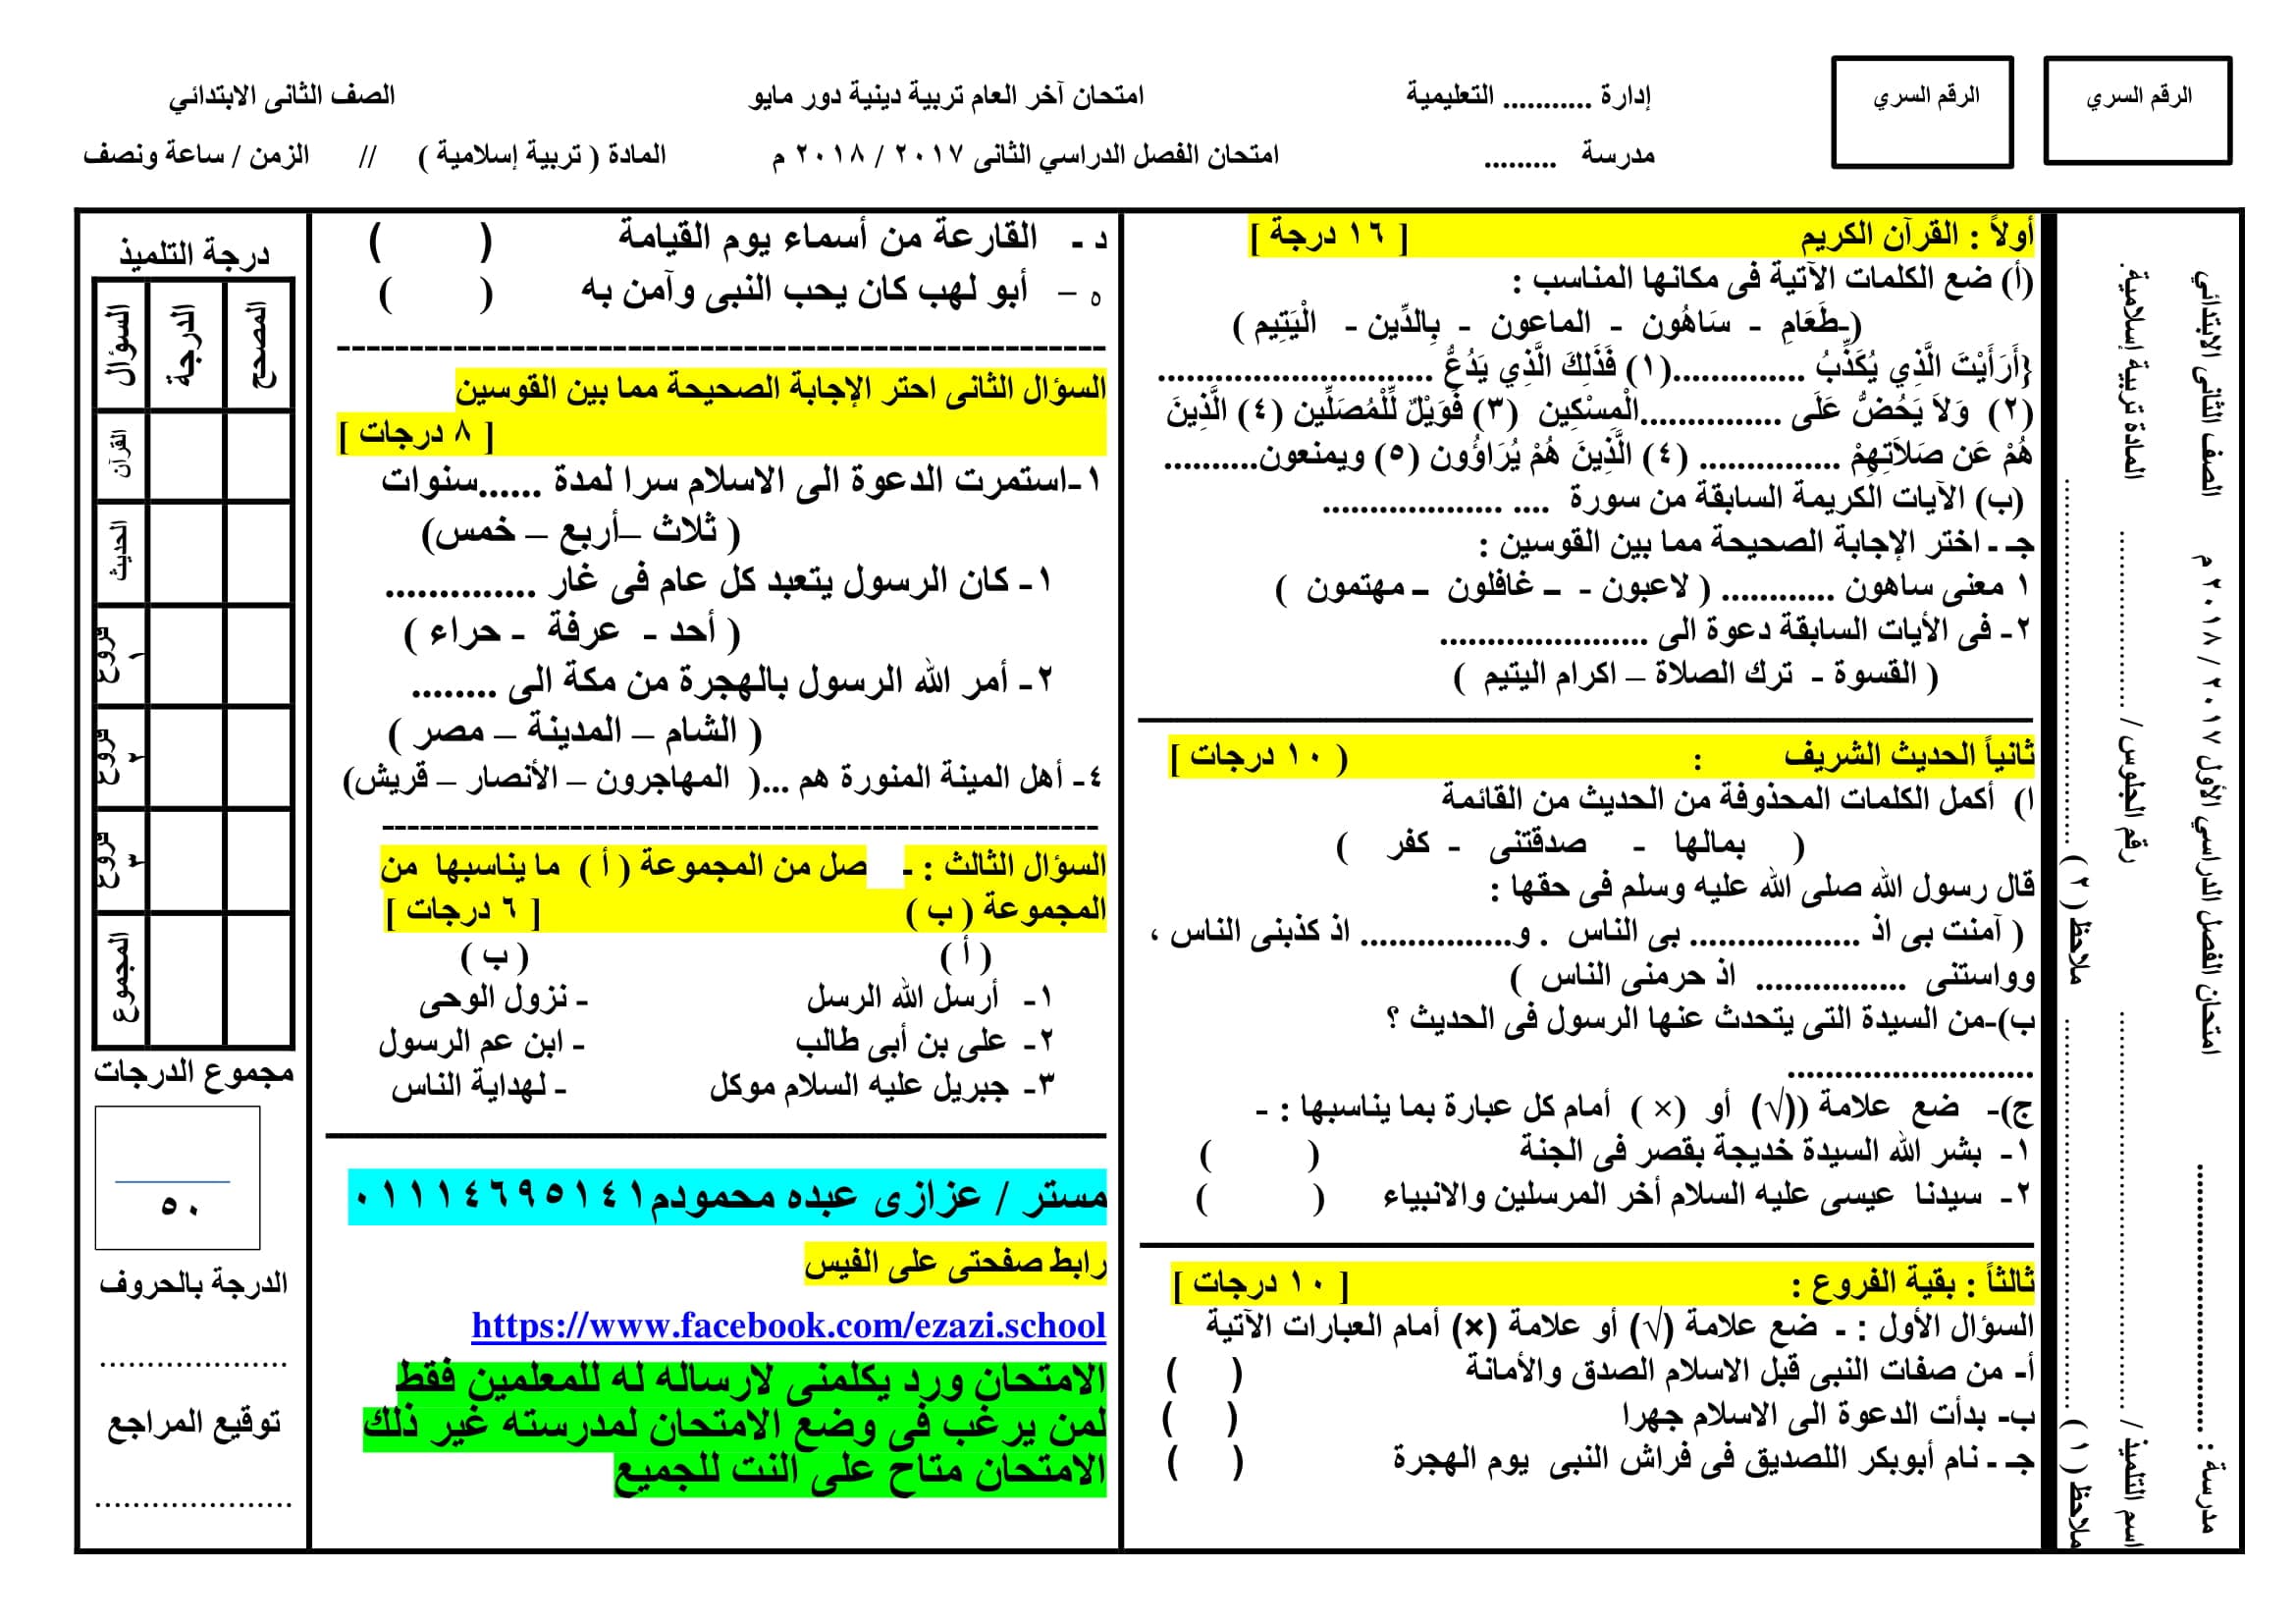 امتحان جاهز بنموذج الاجابة وتوزيع الدرجات فى التربية الدينية الاسلامية للصف الثانى الابتدائى الترم الثانى